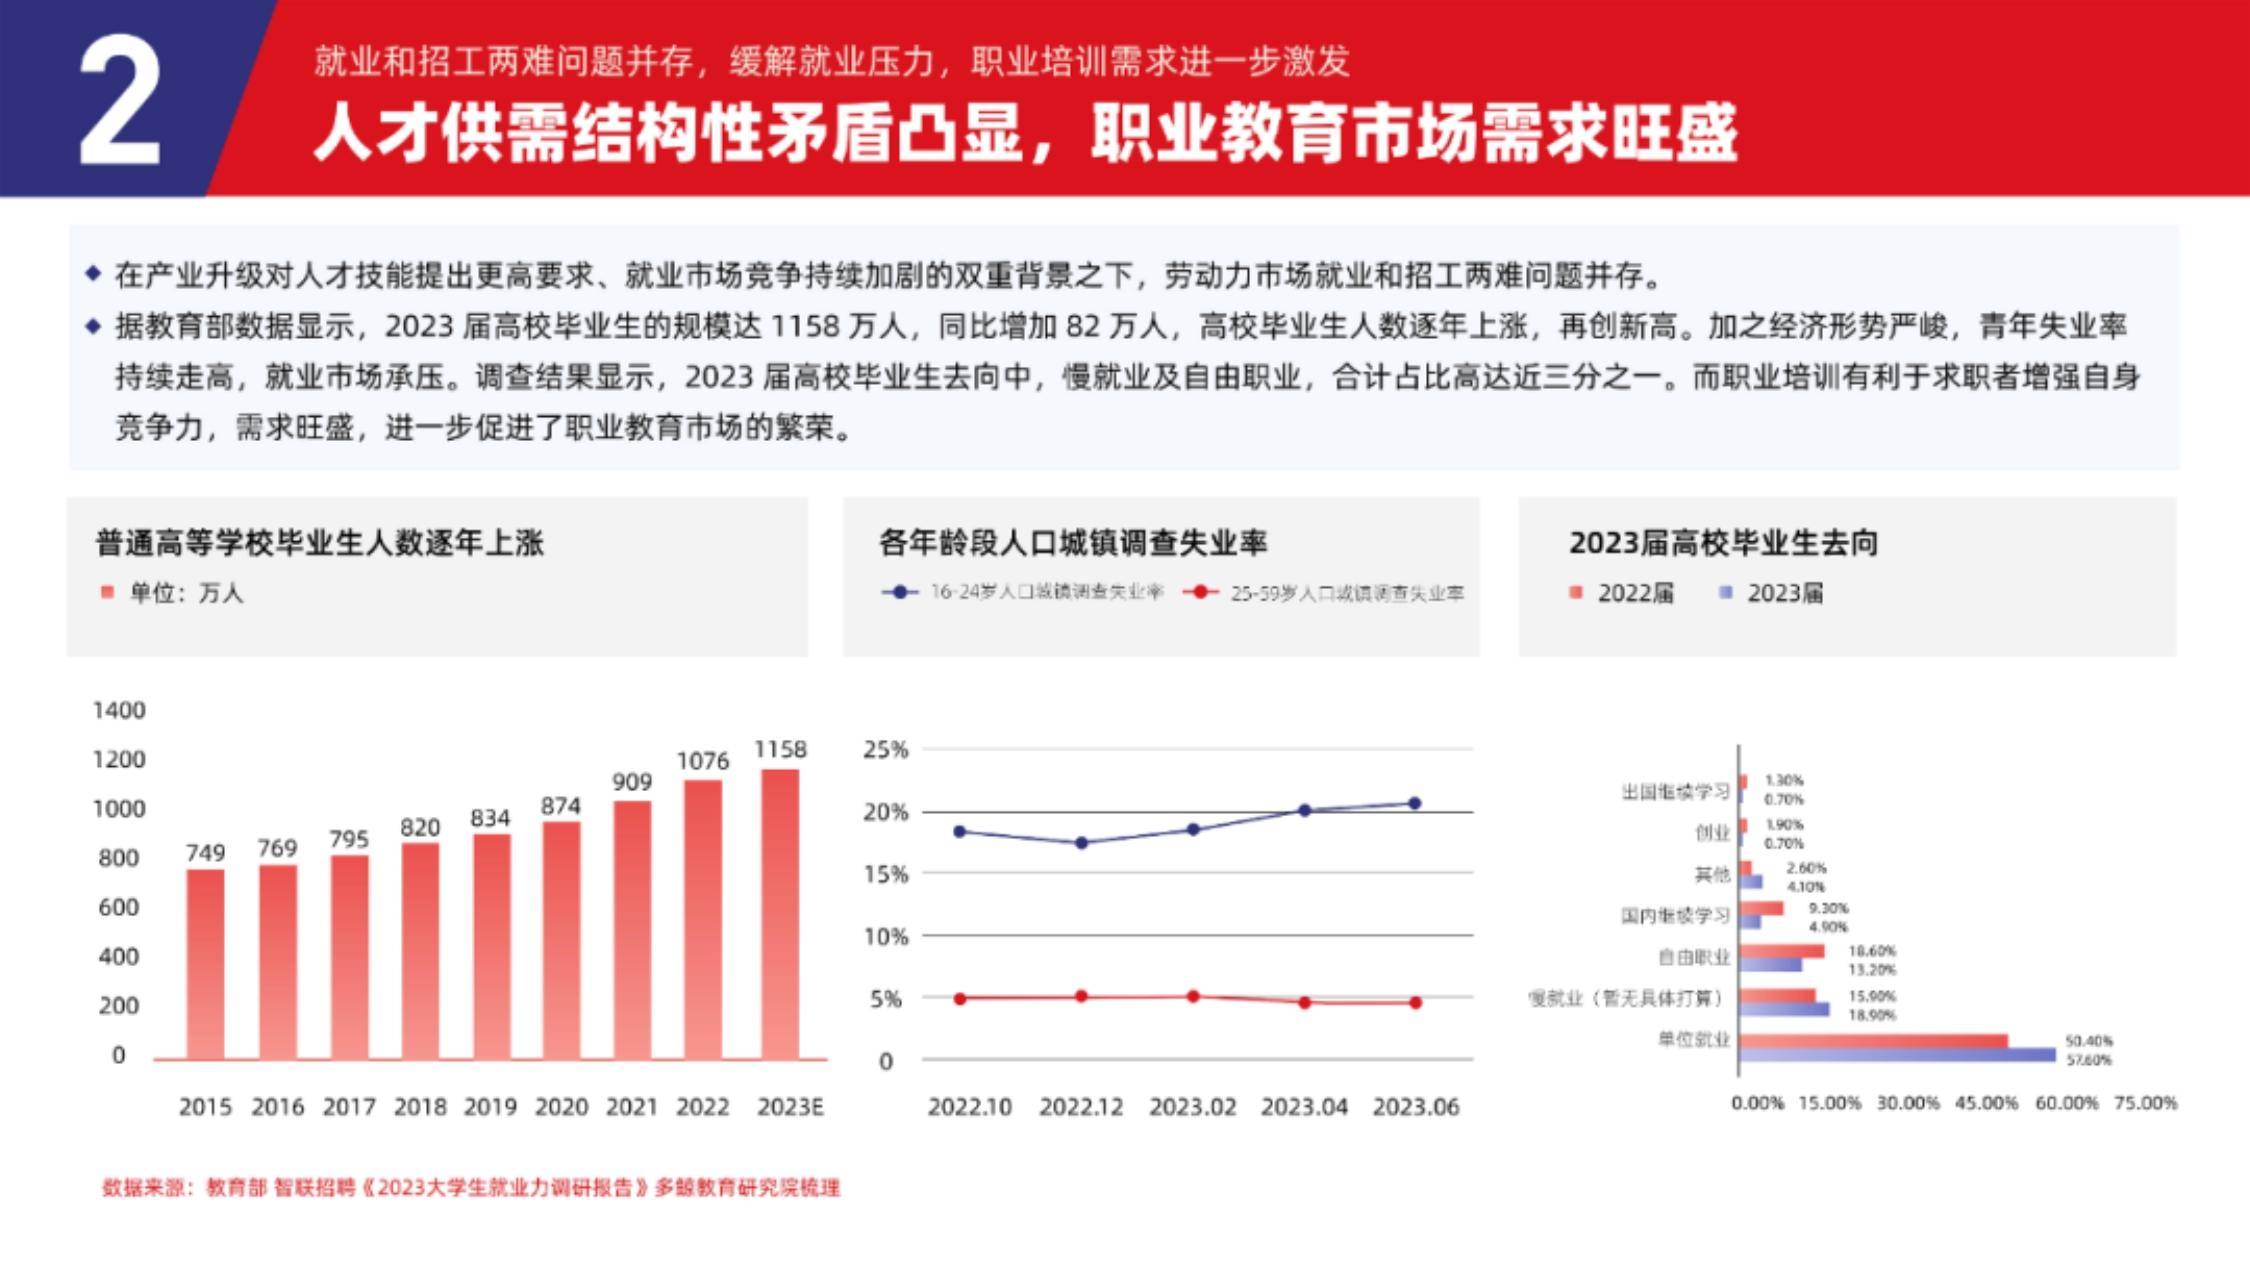 2023中国职业教育行业发展趋势报告